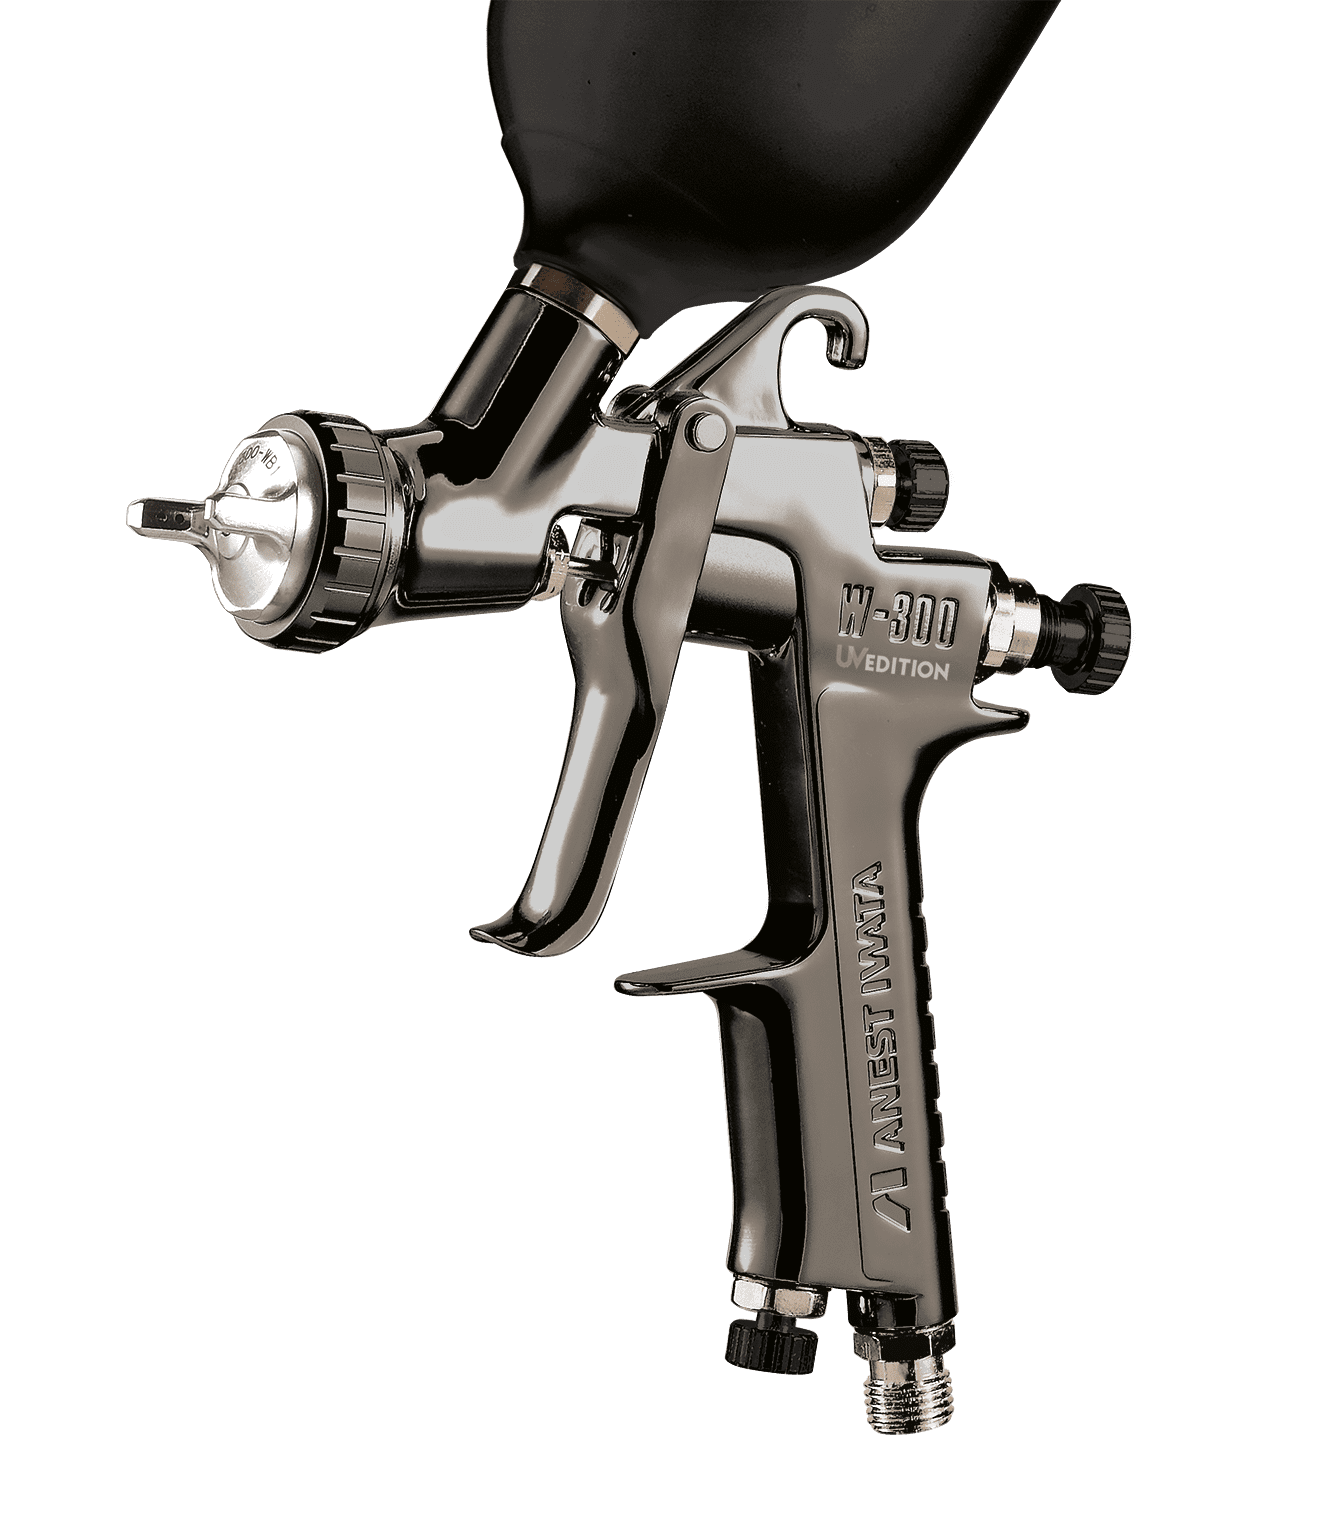 Automatic Spray Gun W-300 WB UV for coating